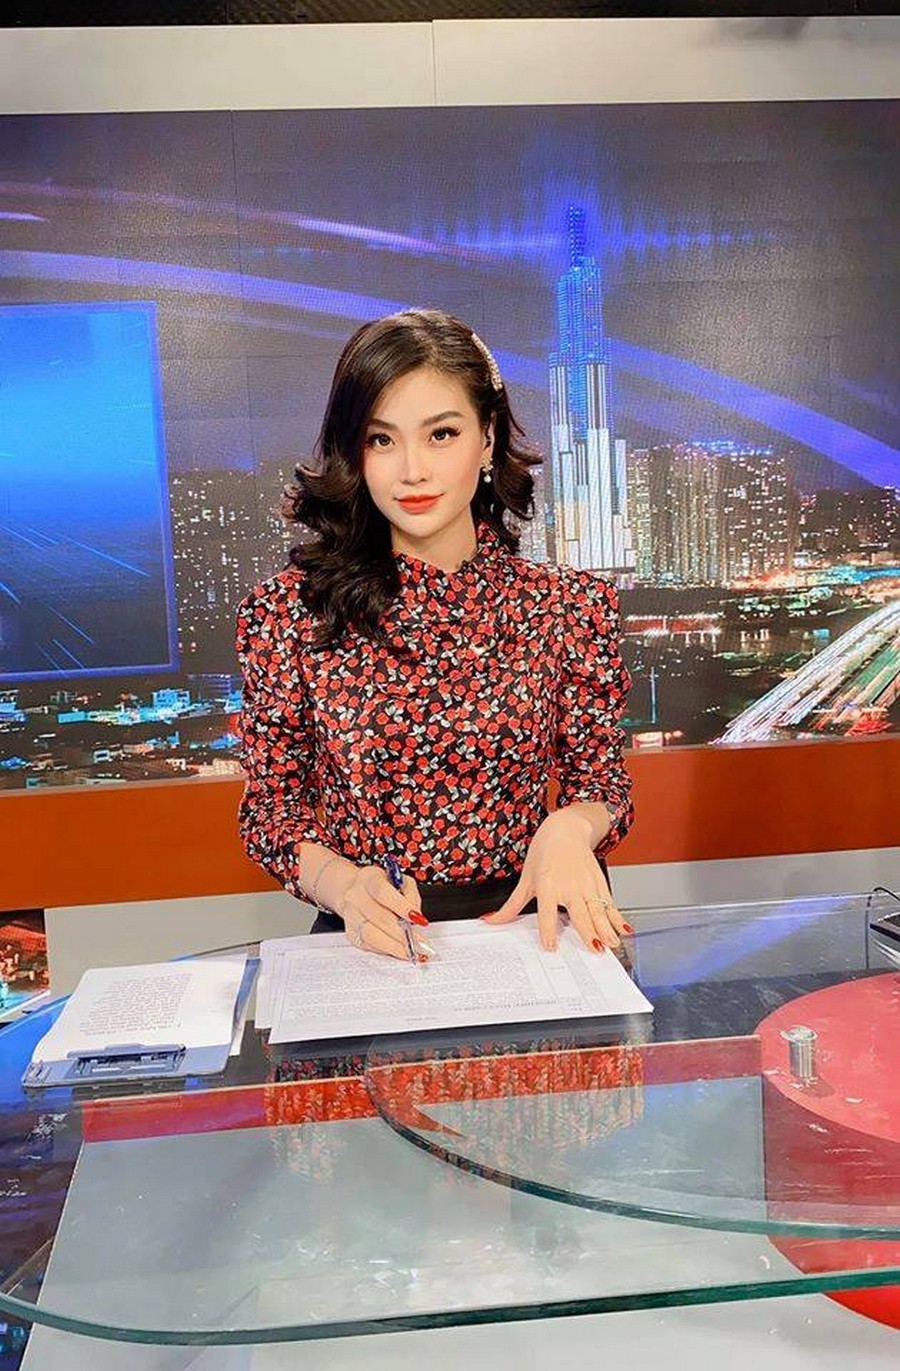  
Á hậu Diễm Trang cũng vừa đăng tải hình ảnh mới khoe kiểu tóc uốn gập. Là một MC truyền hình người đẹp vẫn giữ được sự chuẩn mực, chỉn chu nhưng không kém phần xinh đẹp. 